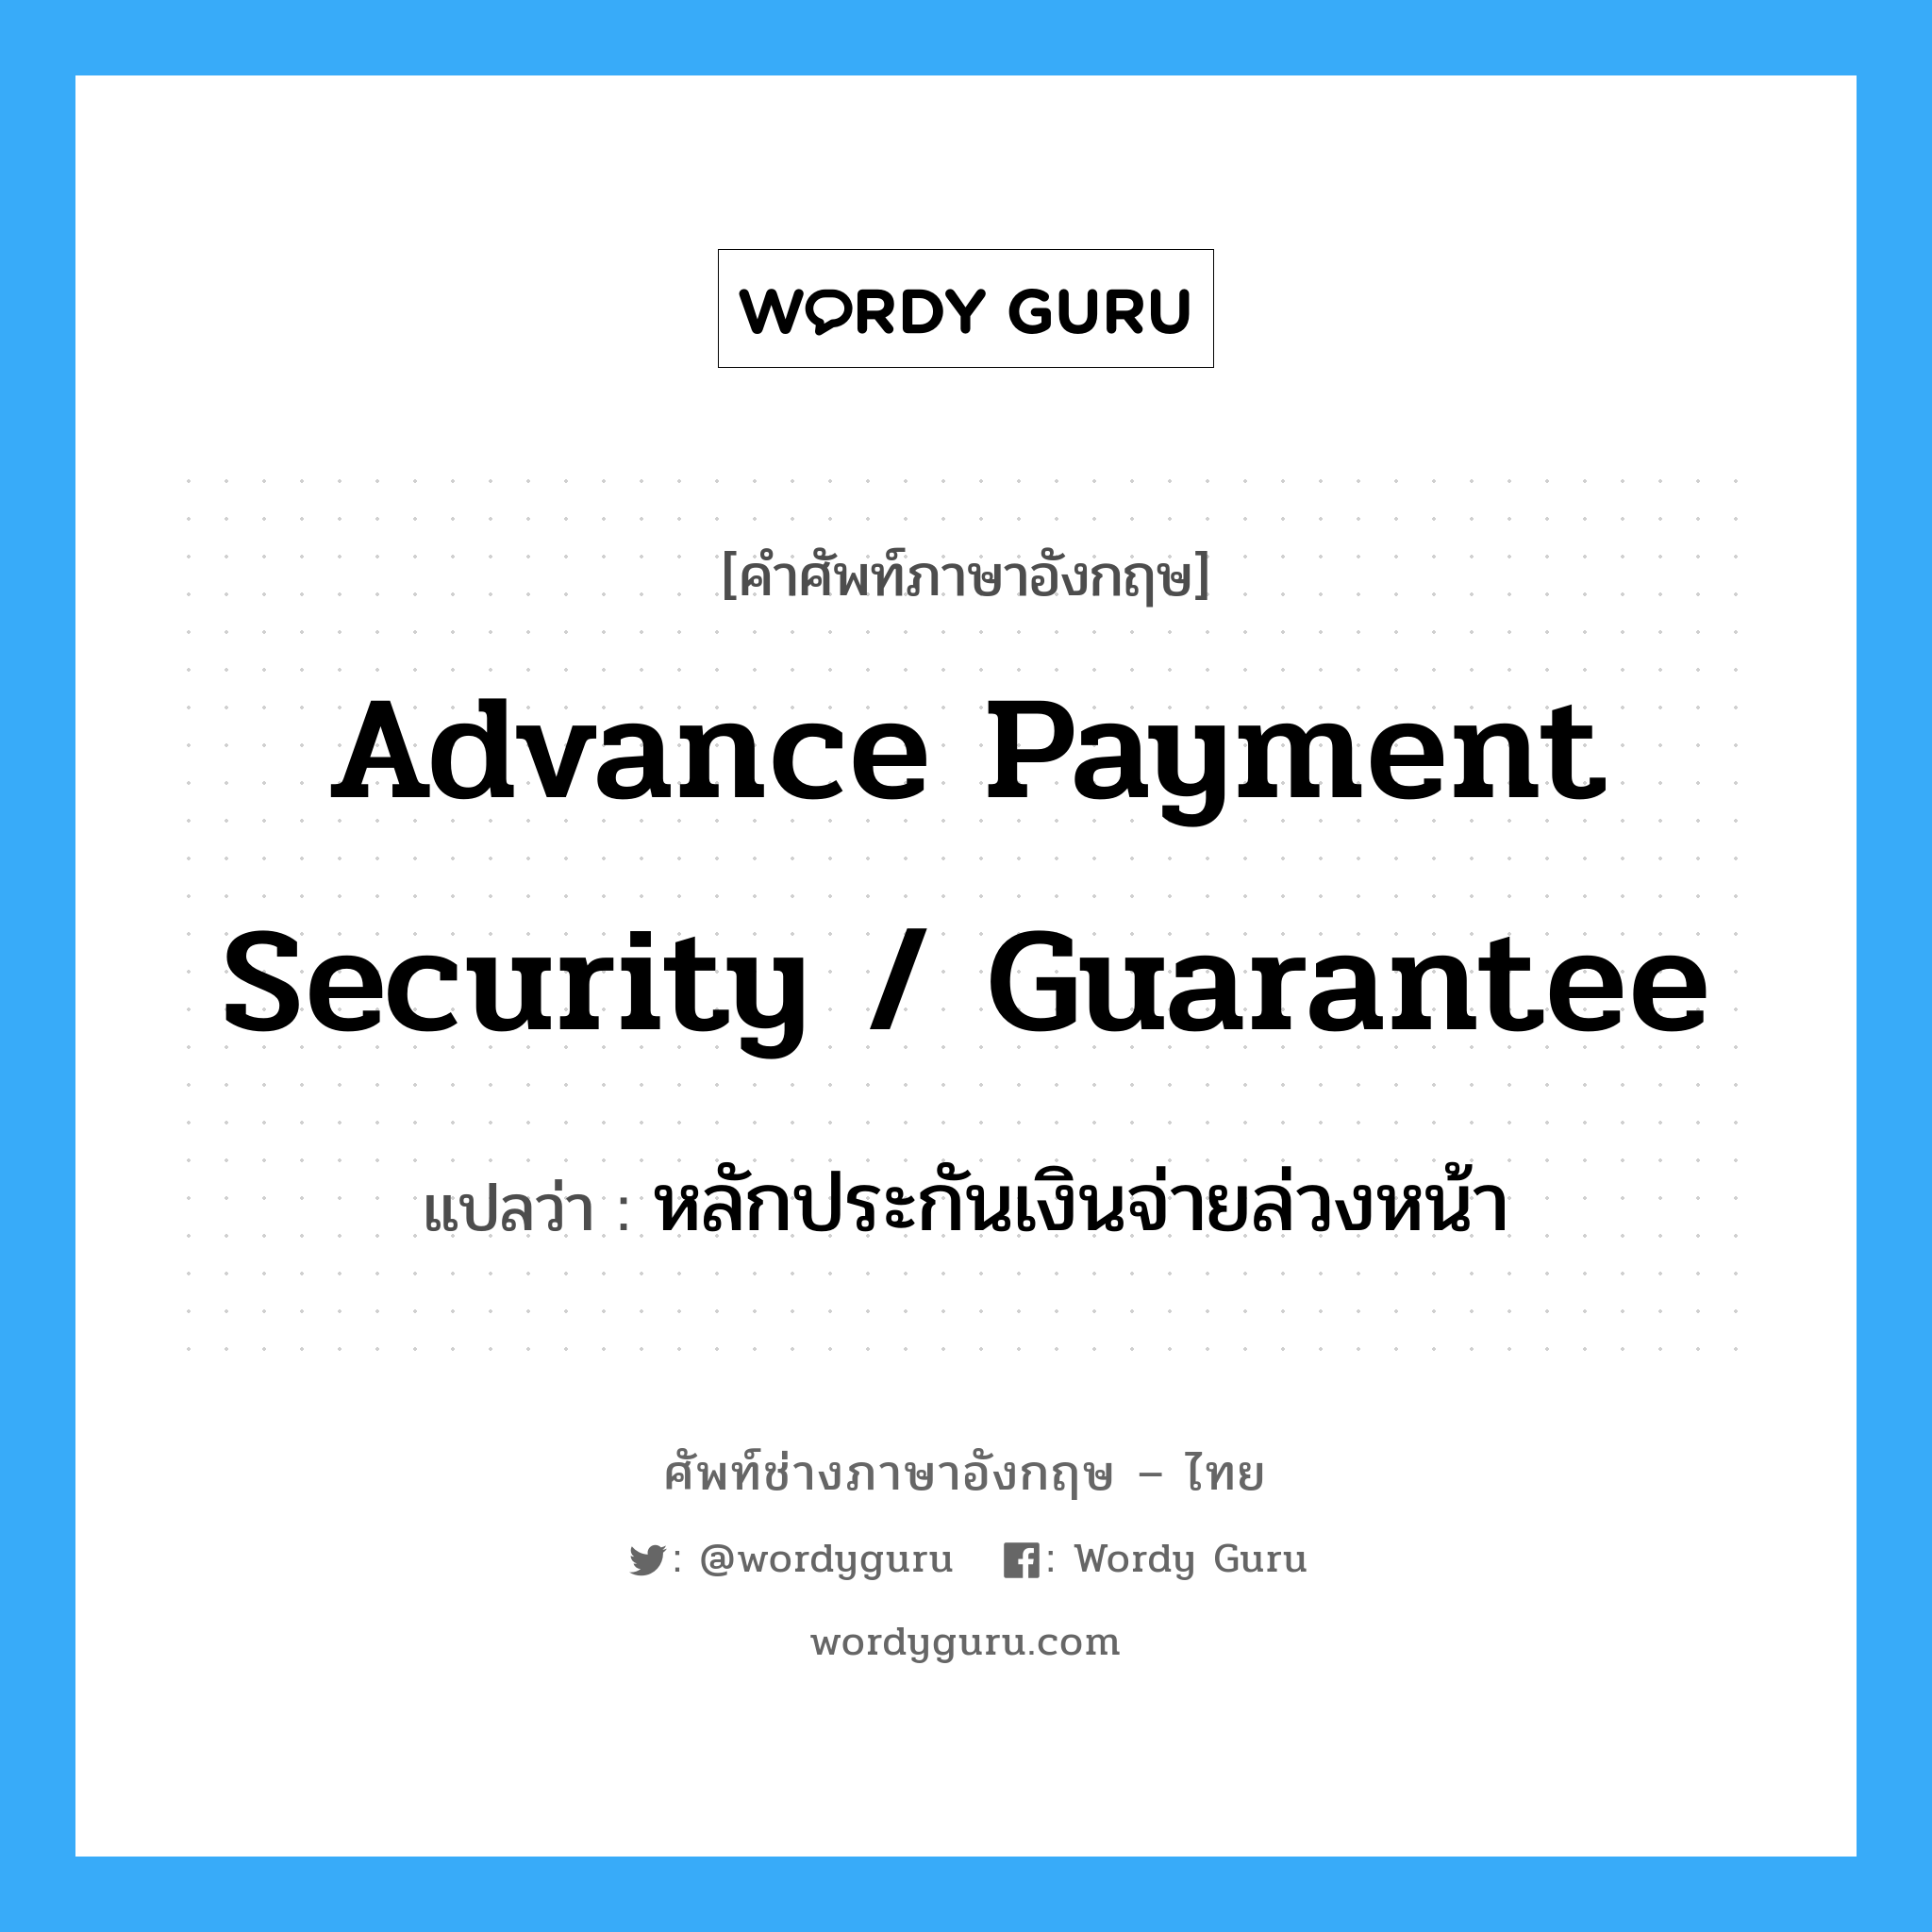 Advance Payment Security Guarantee แปลว่า?, คำศัพท์ช่างภาษาอังกฤษ - ไทย advance payment security / guarantee คำศัพท์ภาษาอังกฤษ advance payment security / guarantee แปลว่า หลักประกันเงินจ่ายล่วงหน้า